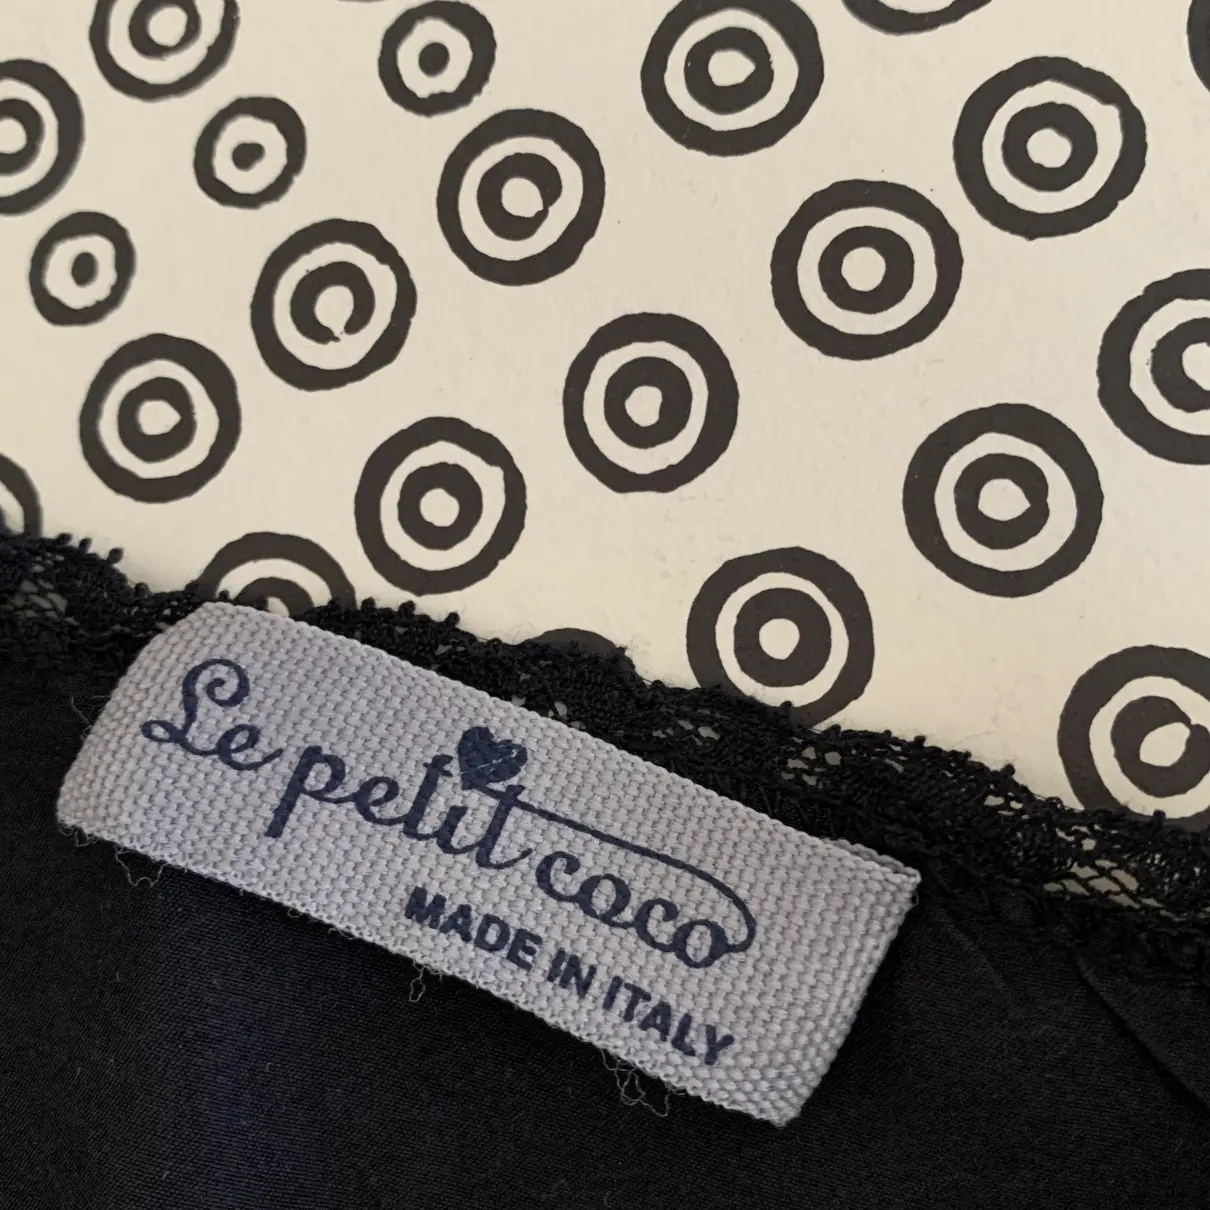 Buy Le Petit Coco Silk dress online